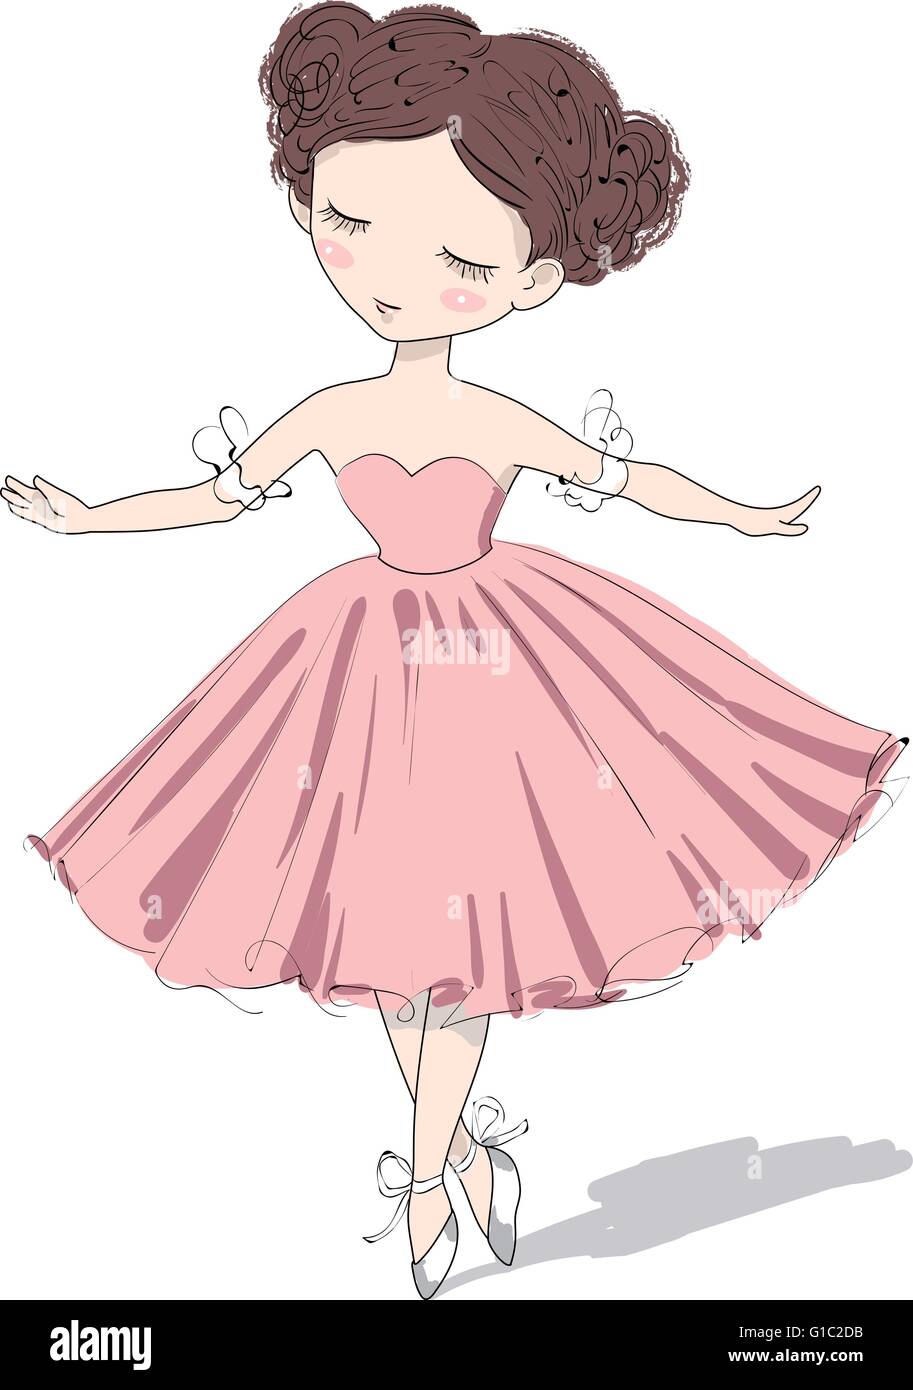 Süße Ballerina Mädchen. Vektor-Illustration von einem romantischen schönen Mädchen. Stock Vektor